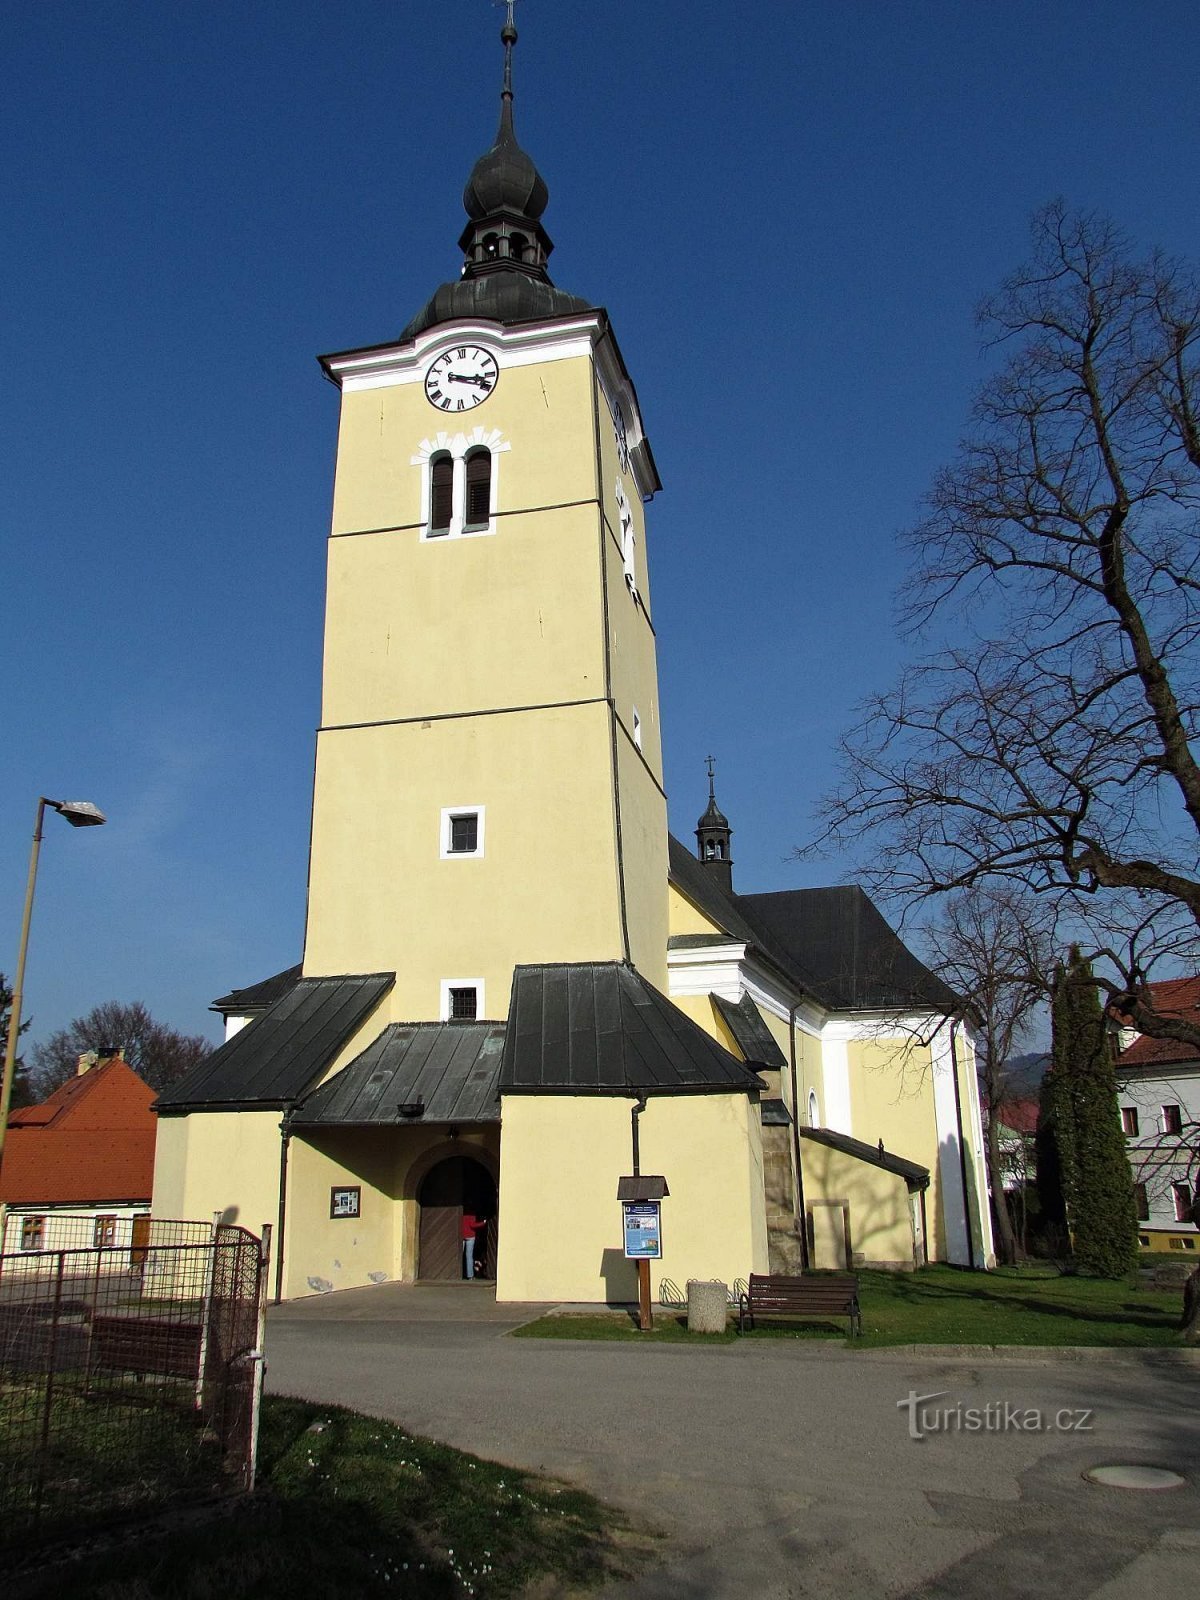 Valašskoklobucký chiesa dell'Esaltazione della Santa Croce